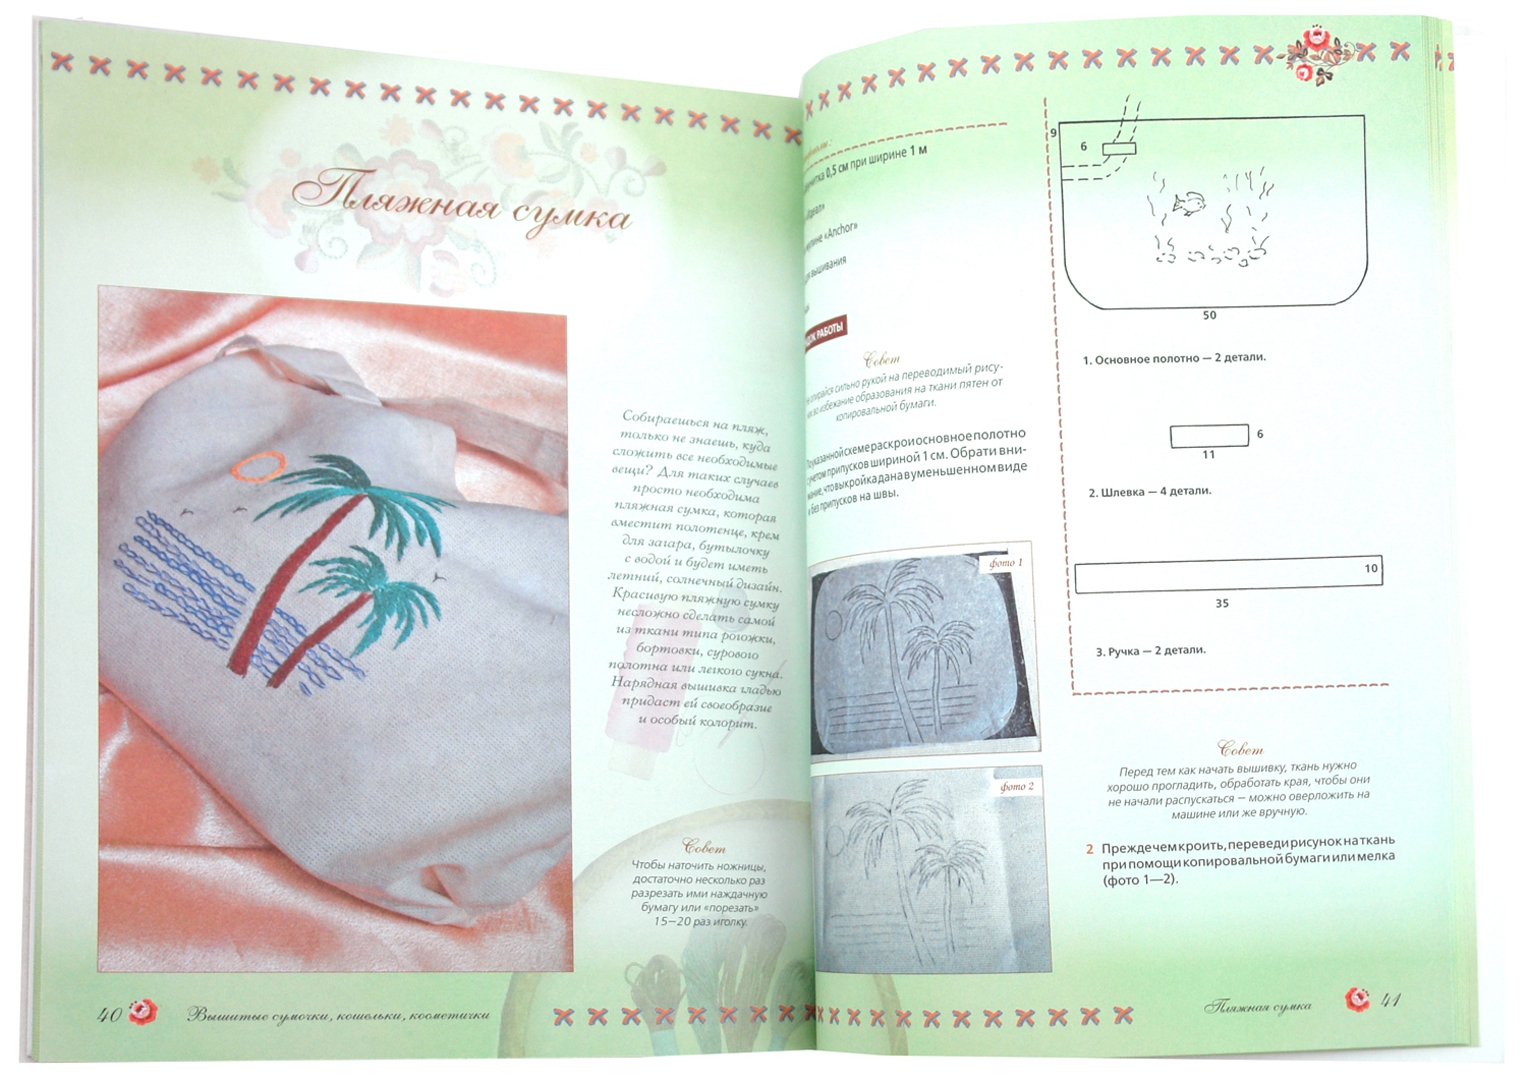 Иллюстрация 1 из 6 для Вышитые сумочки, кошельки, косметички - Светлана Гутина | Лабиринт - книги. Источник: Лабиринт